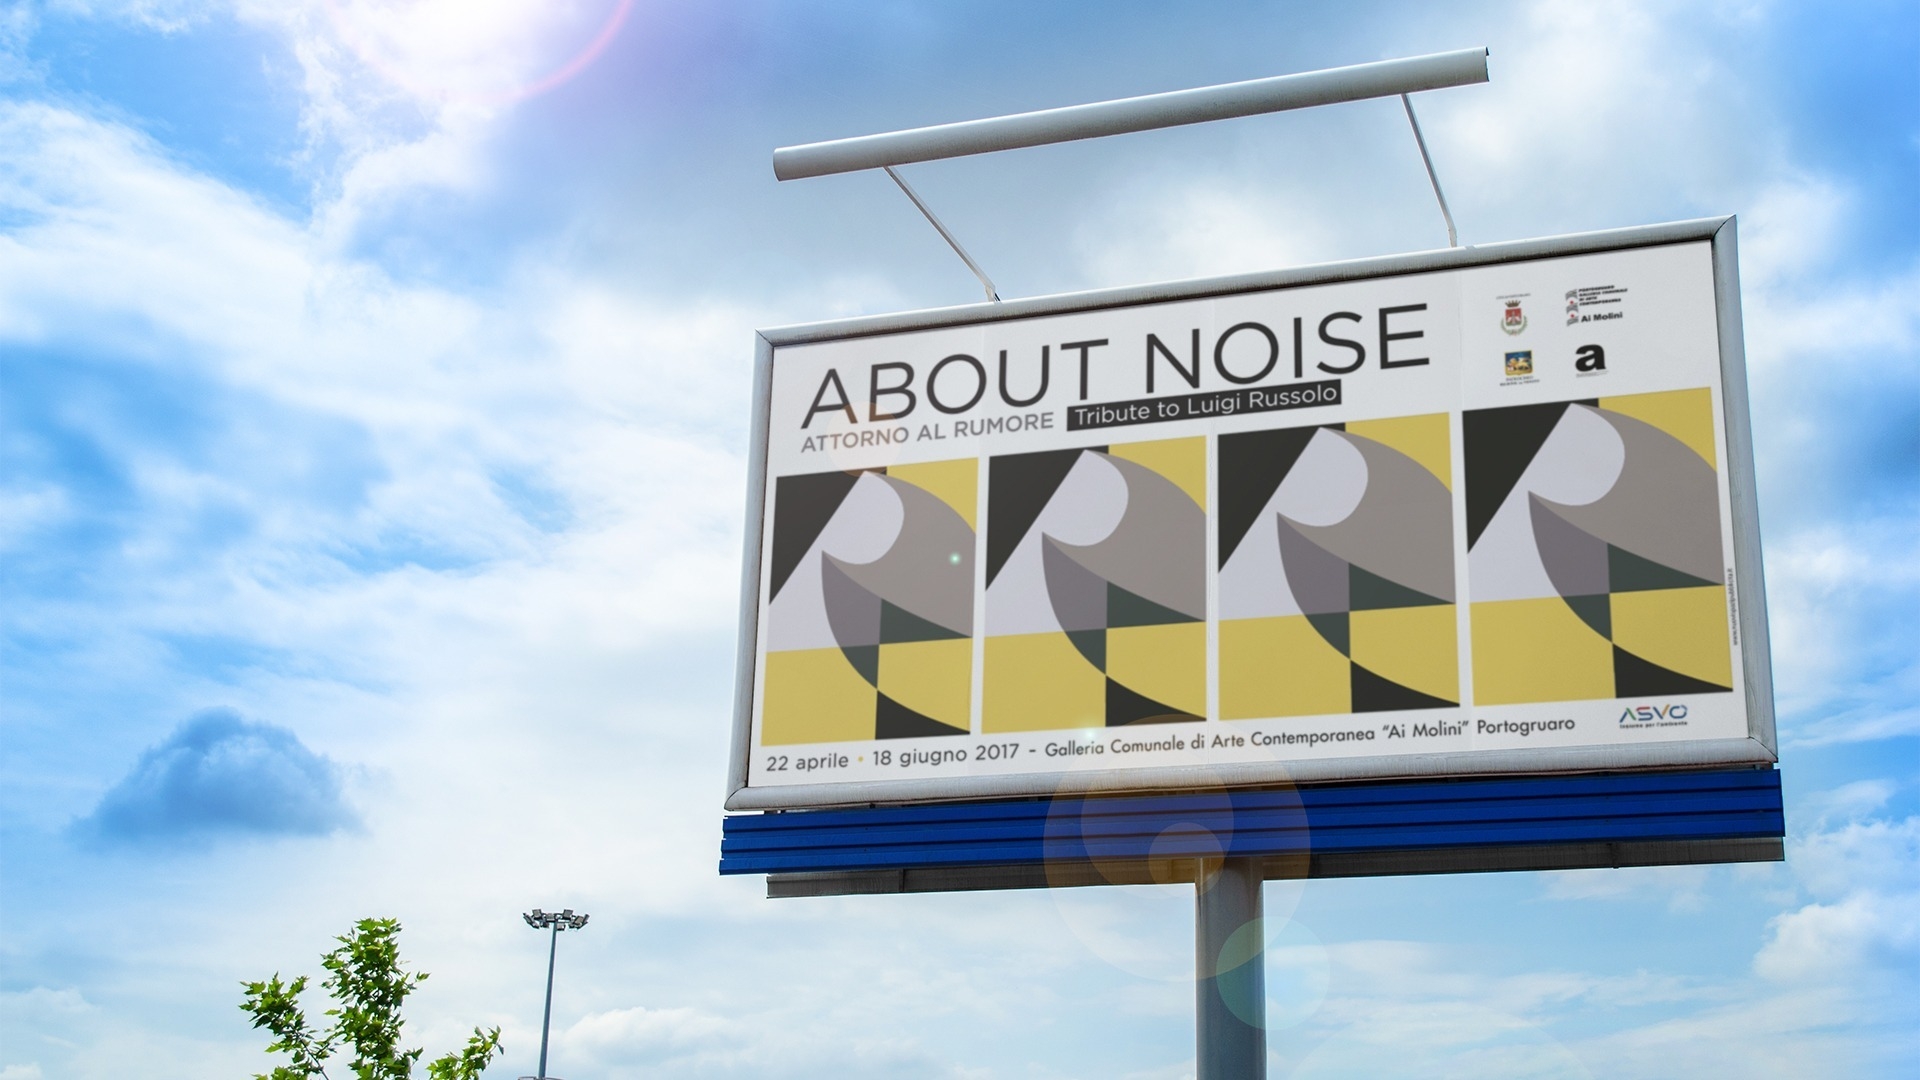 Caso studio About Noise: un omaggio al futurista Luigi Russolo